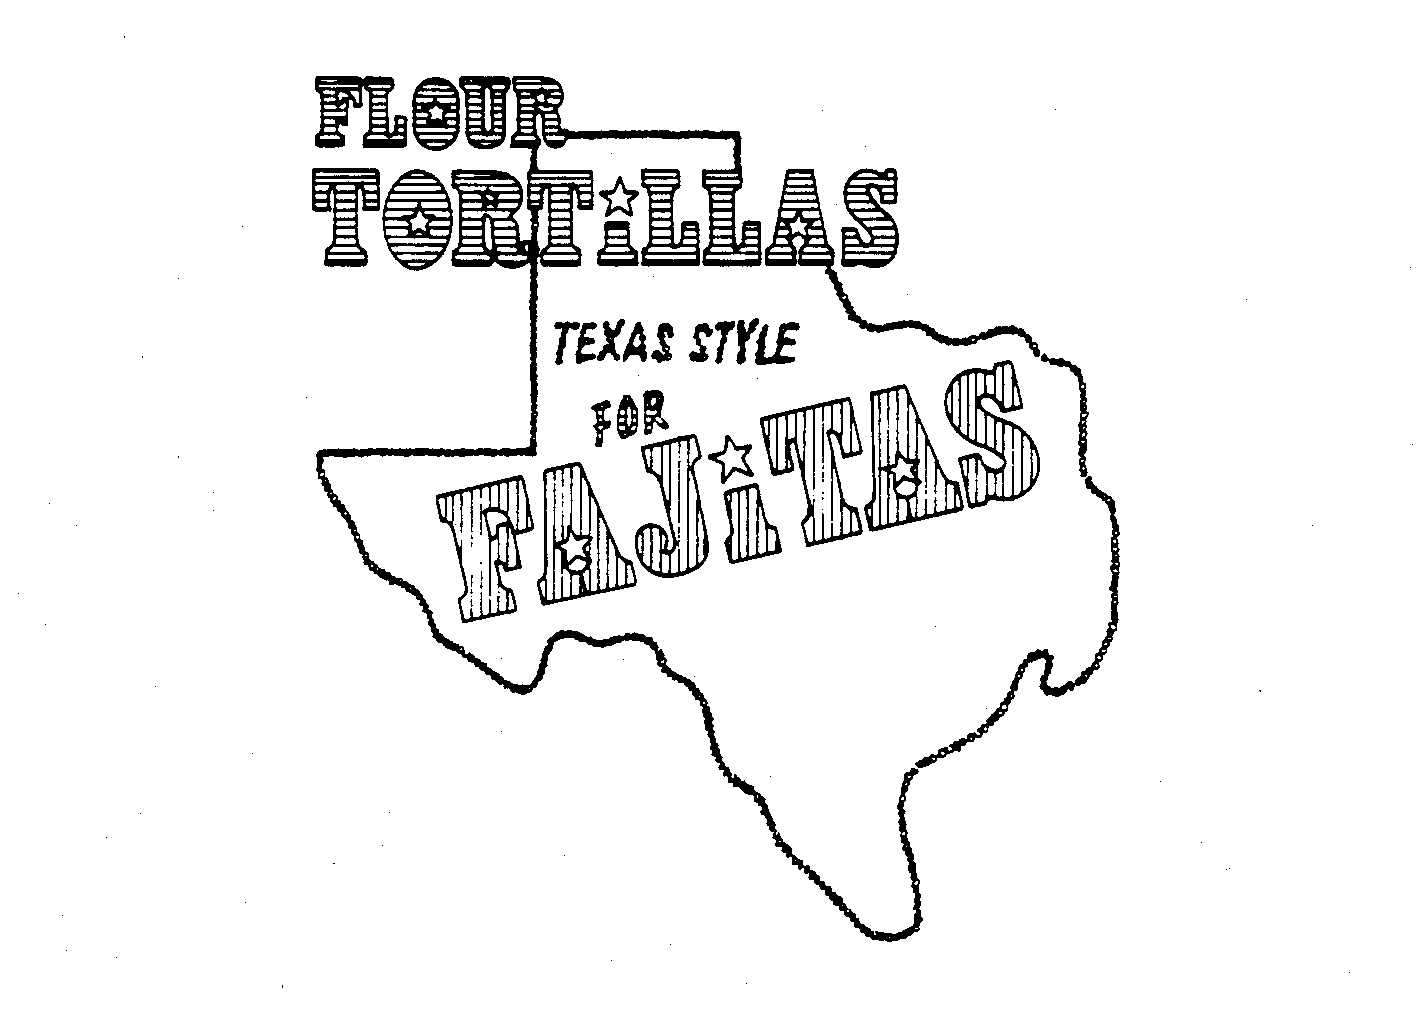  FLOUR TORTILLAS TEXAS STYLE FOR FAJITAS